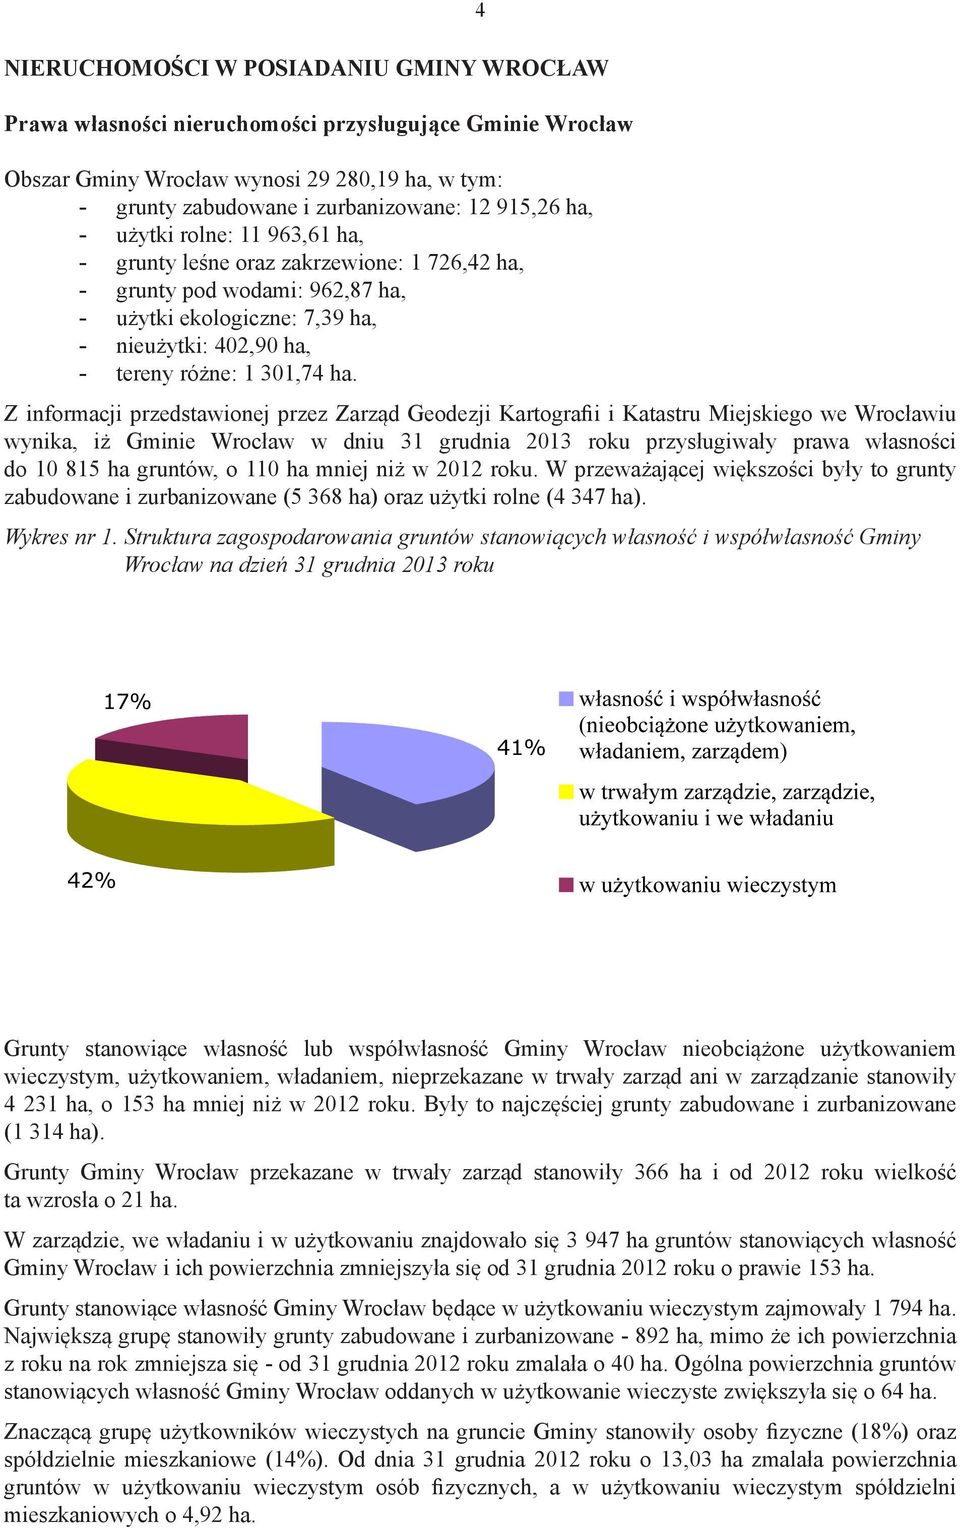 4 Z informacji przedstawionej przez Zarząd Geodezji Kartografii i Katastru Miejskiego we Wrocławiu wynika, iż Gminie Wrocław w dniu 31 grudnia 2013 roku przysługiwały prawa własności do 10 815 ha